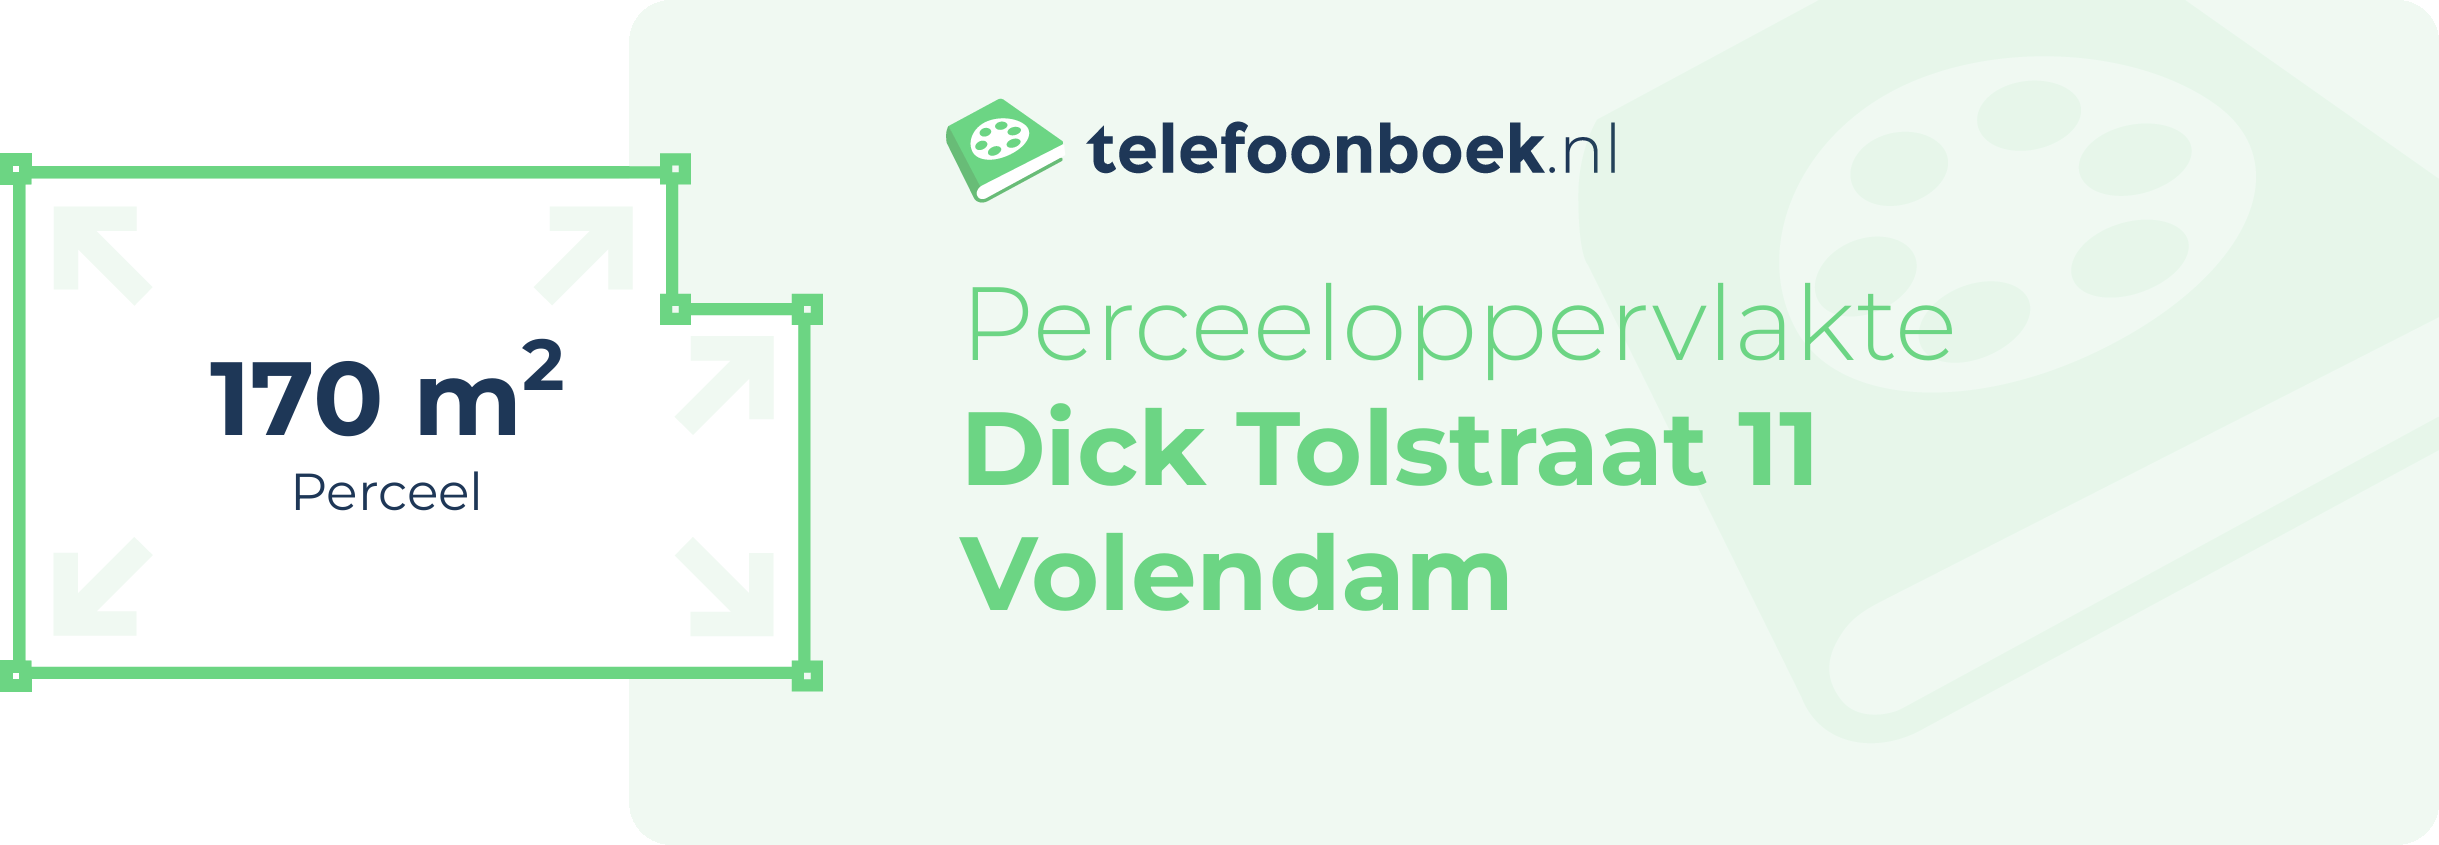 Perceeloppervlakte Dick Tolstraat 11 Volendam